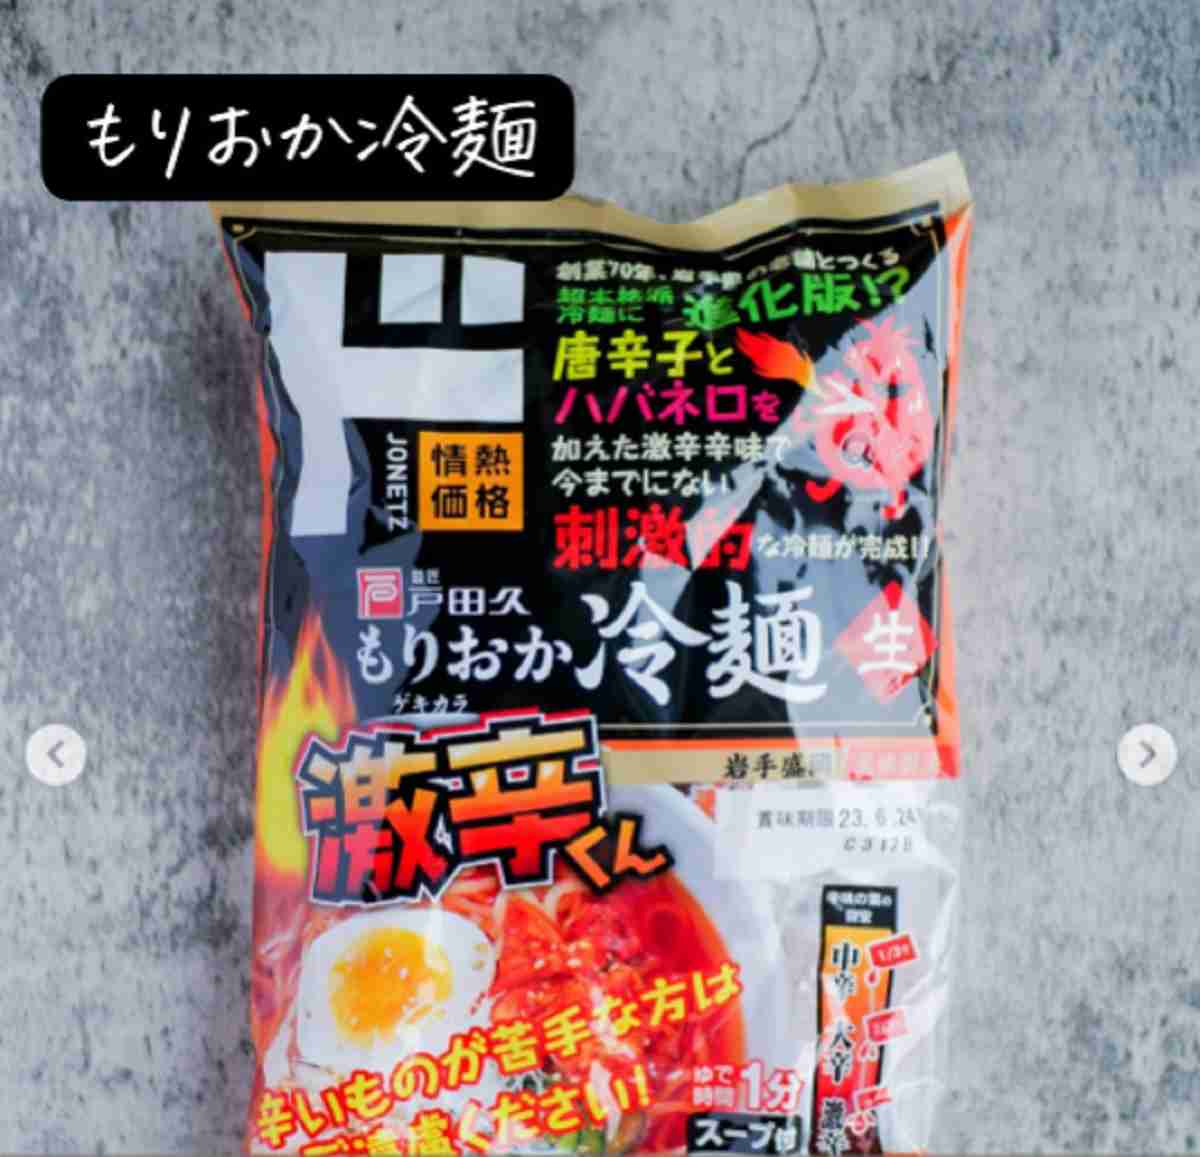 ドン・キホーテのもりおか冷麺をラッコママさんがご紹介（https://www.instagram.com/p/CwNLLo9JnmK/?img_index=5）